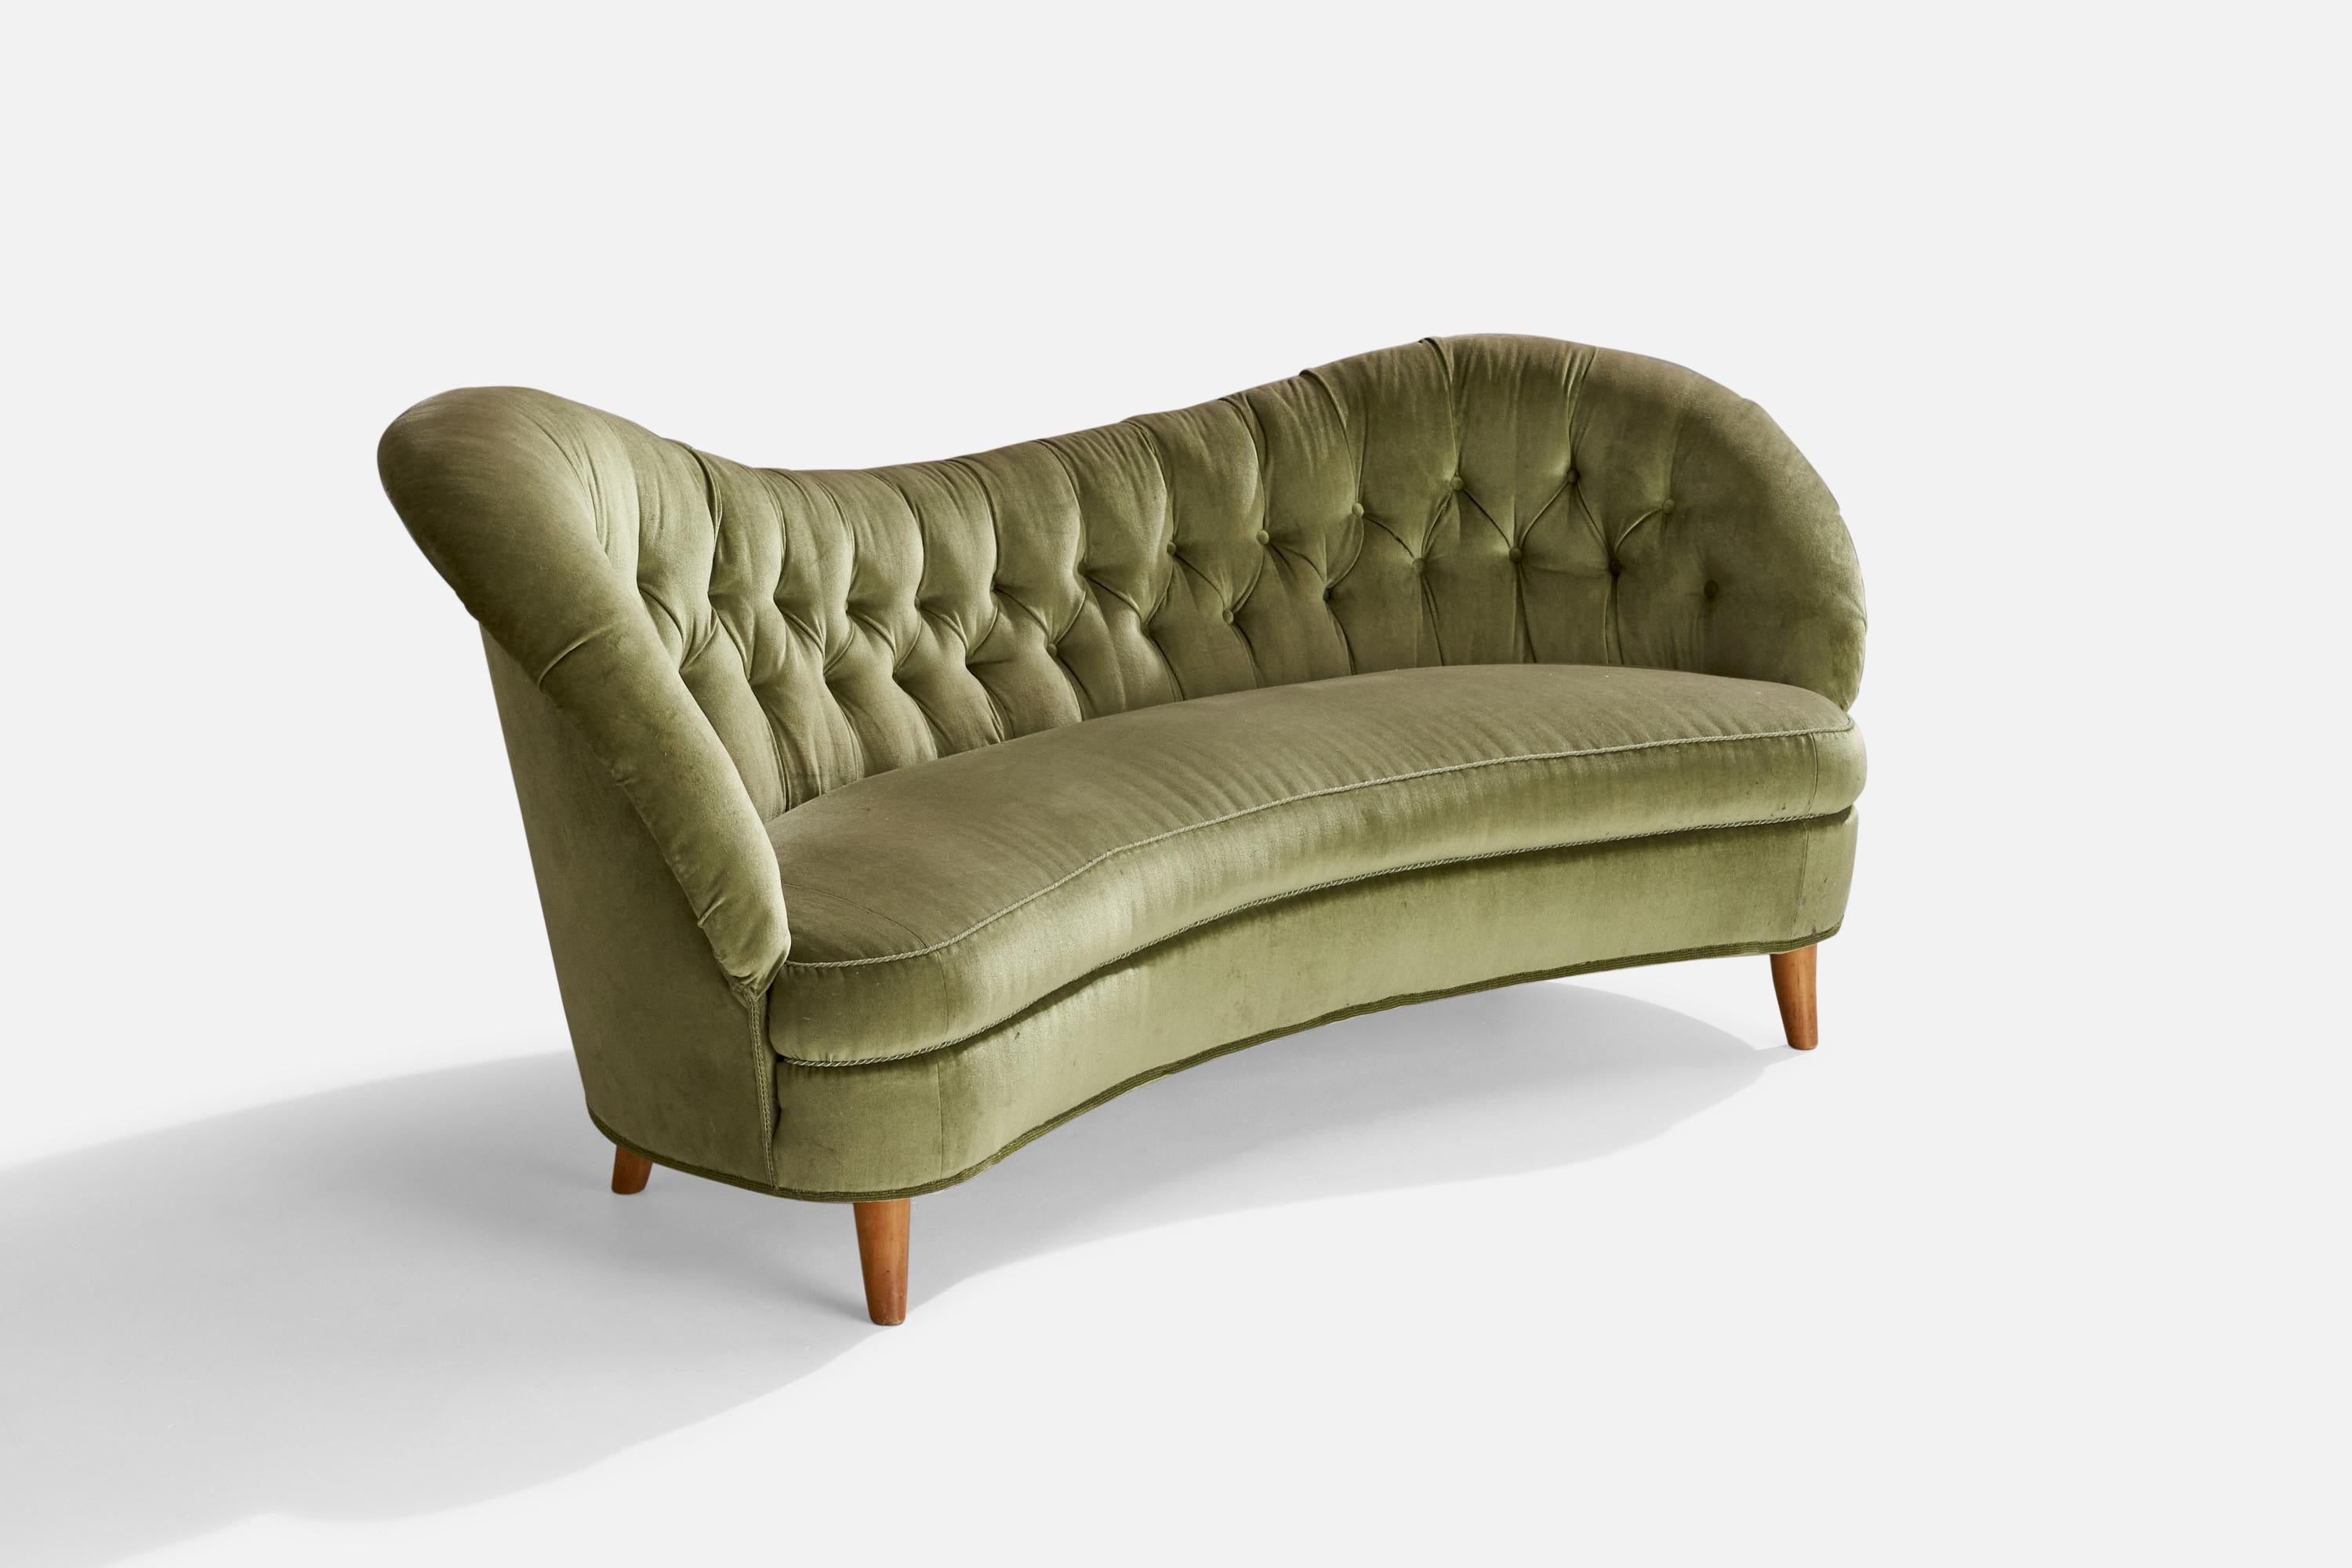 Ein Sofa aus organischem Holz und grünem Samt, entworfen von Tor Wolfenstein und hergestellt von Ditzingers, Schweden, ca. 1940er Jahre.

Sitzhöhe: 17.5